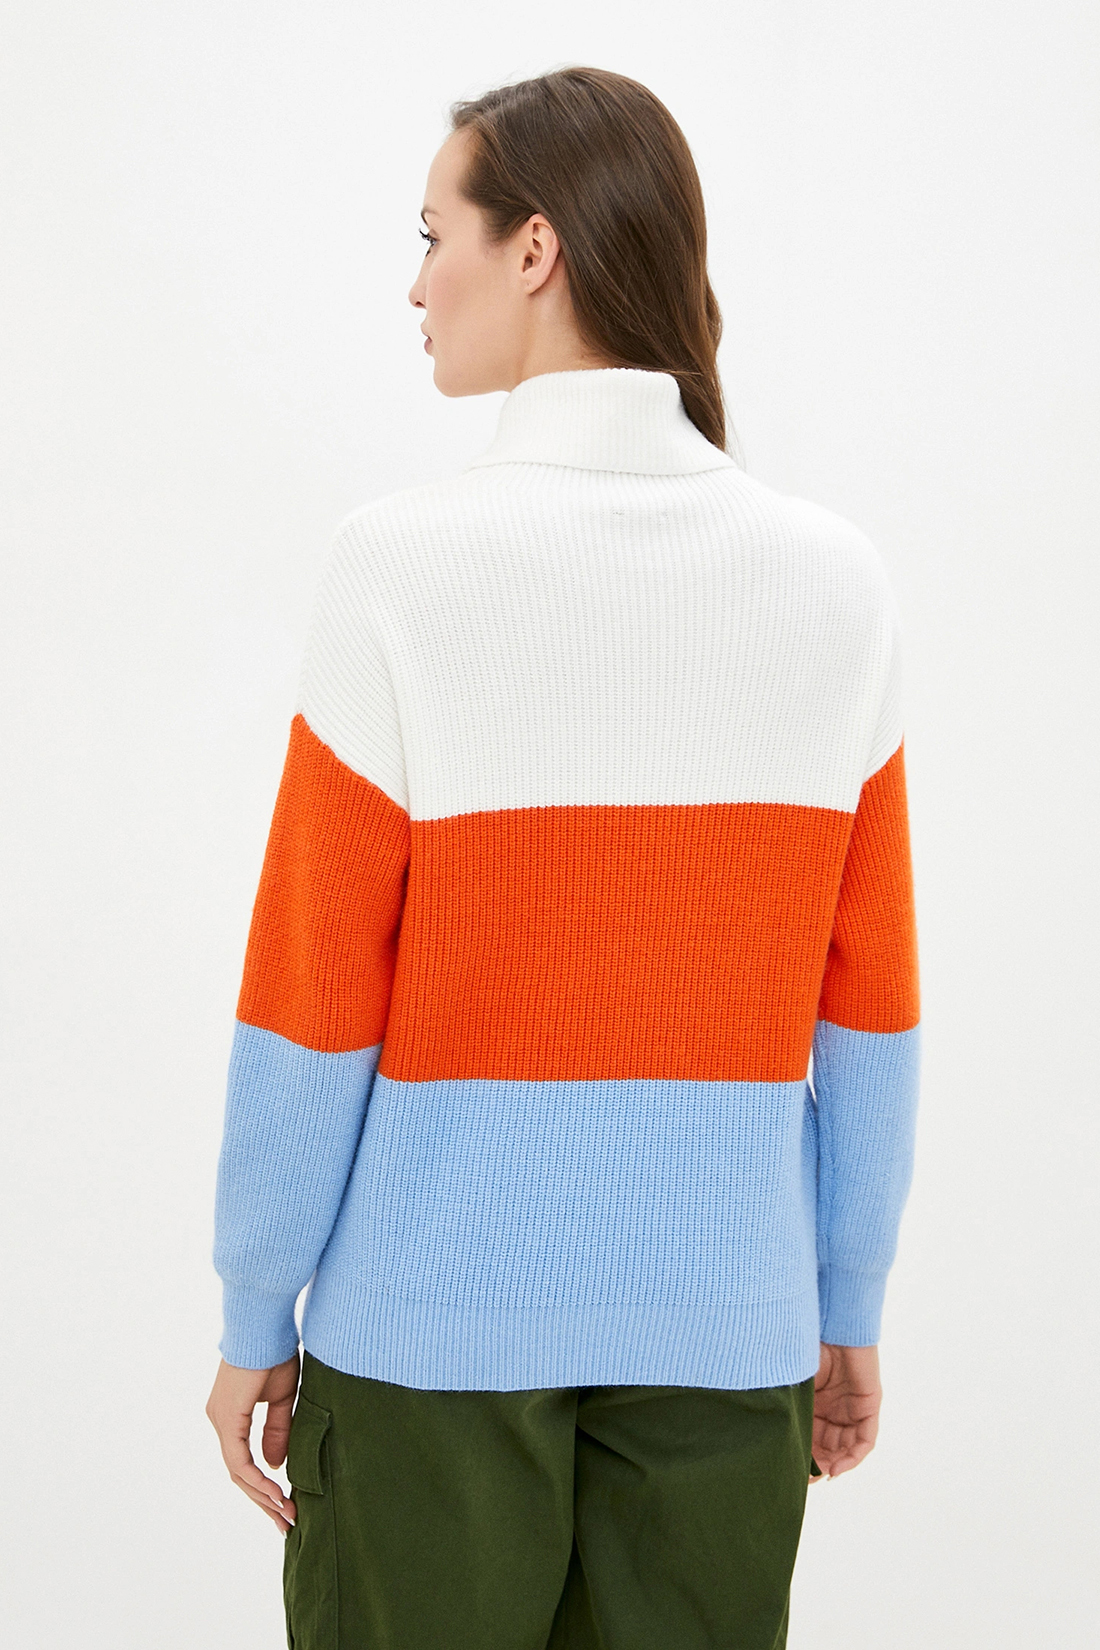 Трёхцветный свитер (арт. baon B229526), размер L Трёхцветный свитер (арт. baon B229526) - фото 2